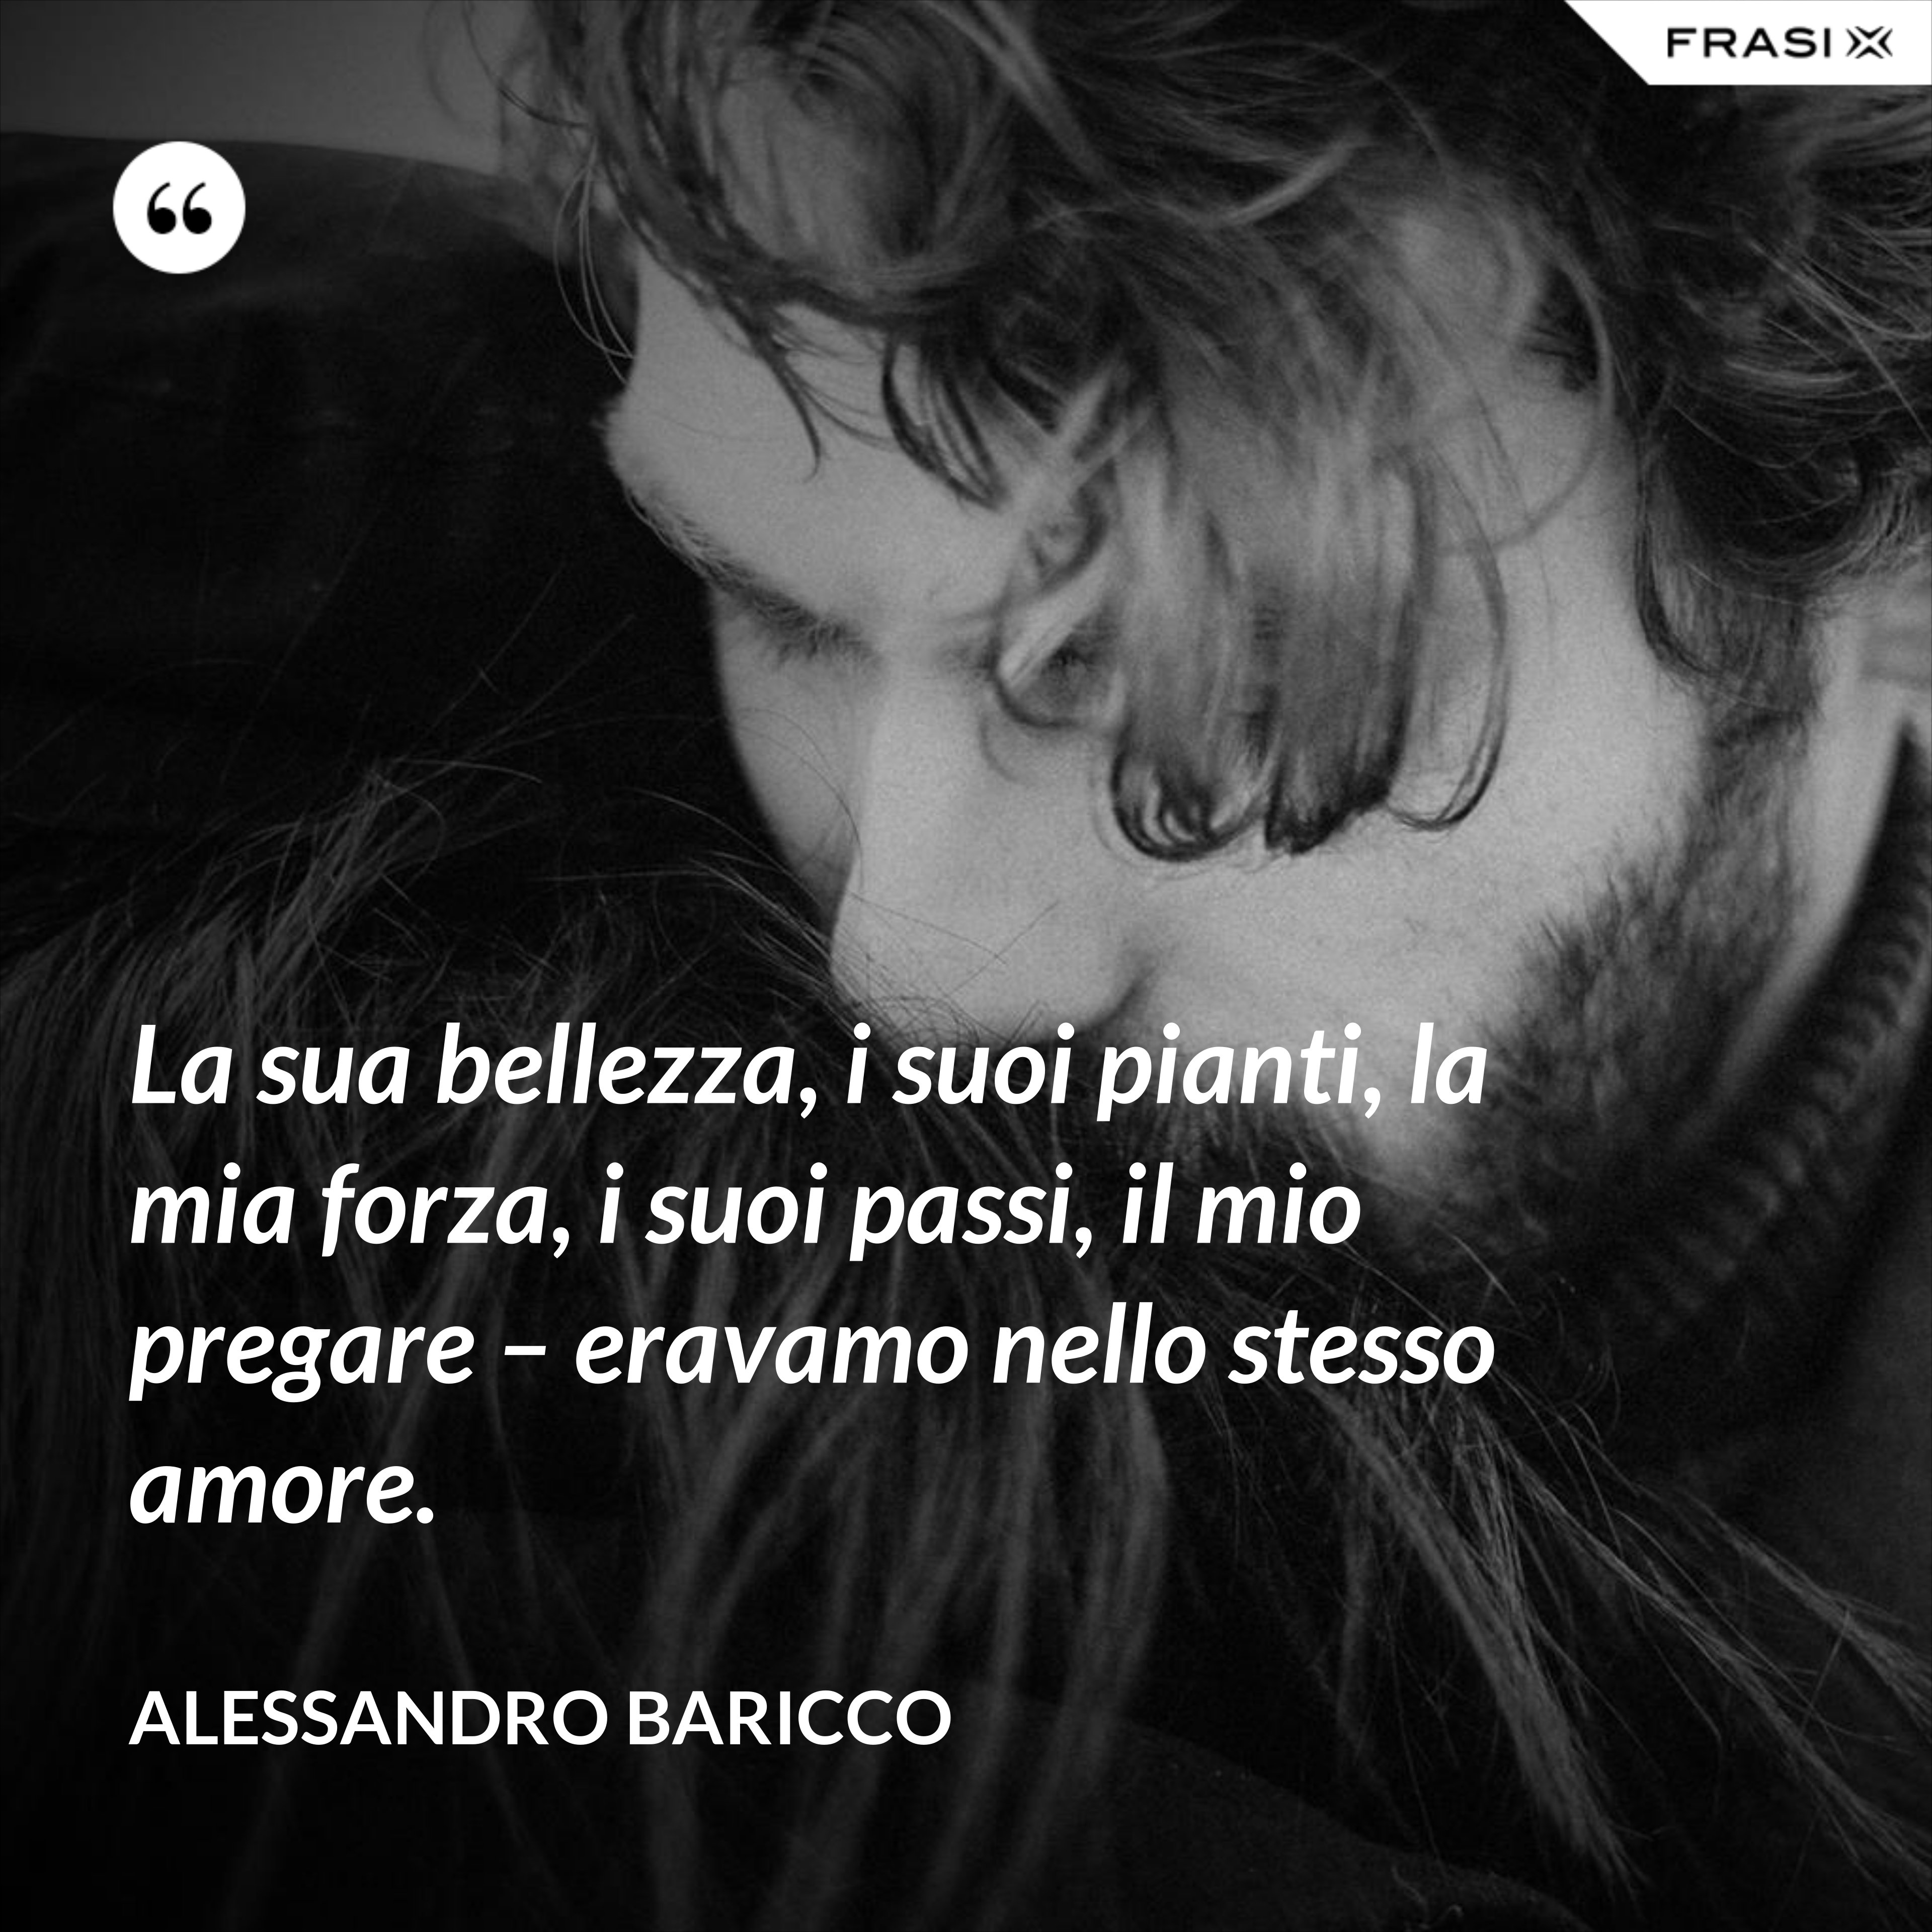 La sua bellezza, i suoi pianti, la mia forza, i suoi passi, il mio pregare – eravamo nello stesso amore. - Alessandro Baricco